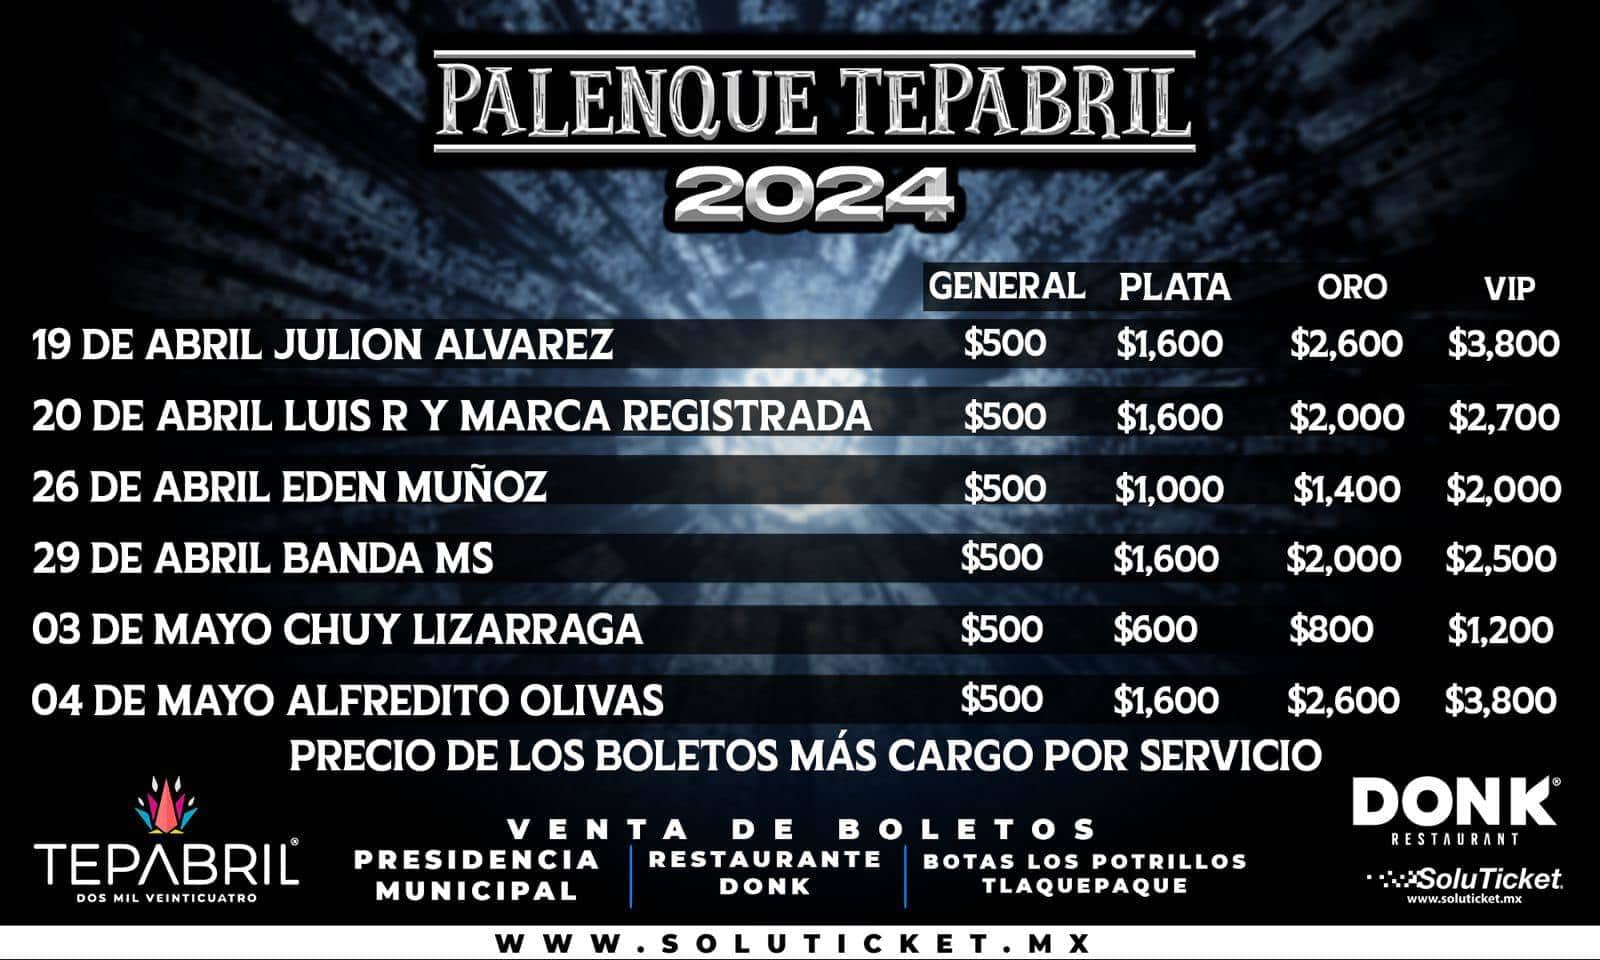 Precios de los boletos para el Palenque de Tepabril 2024